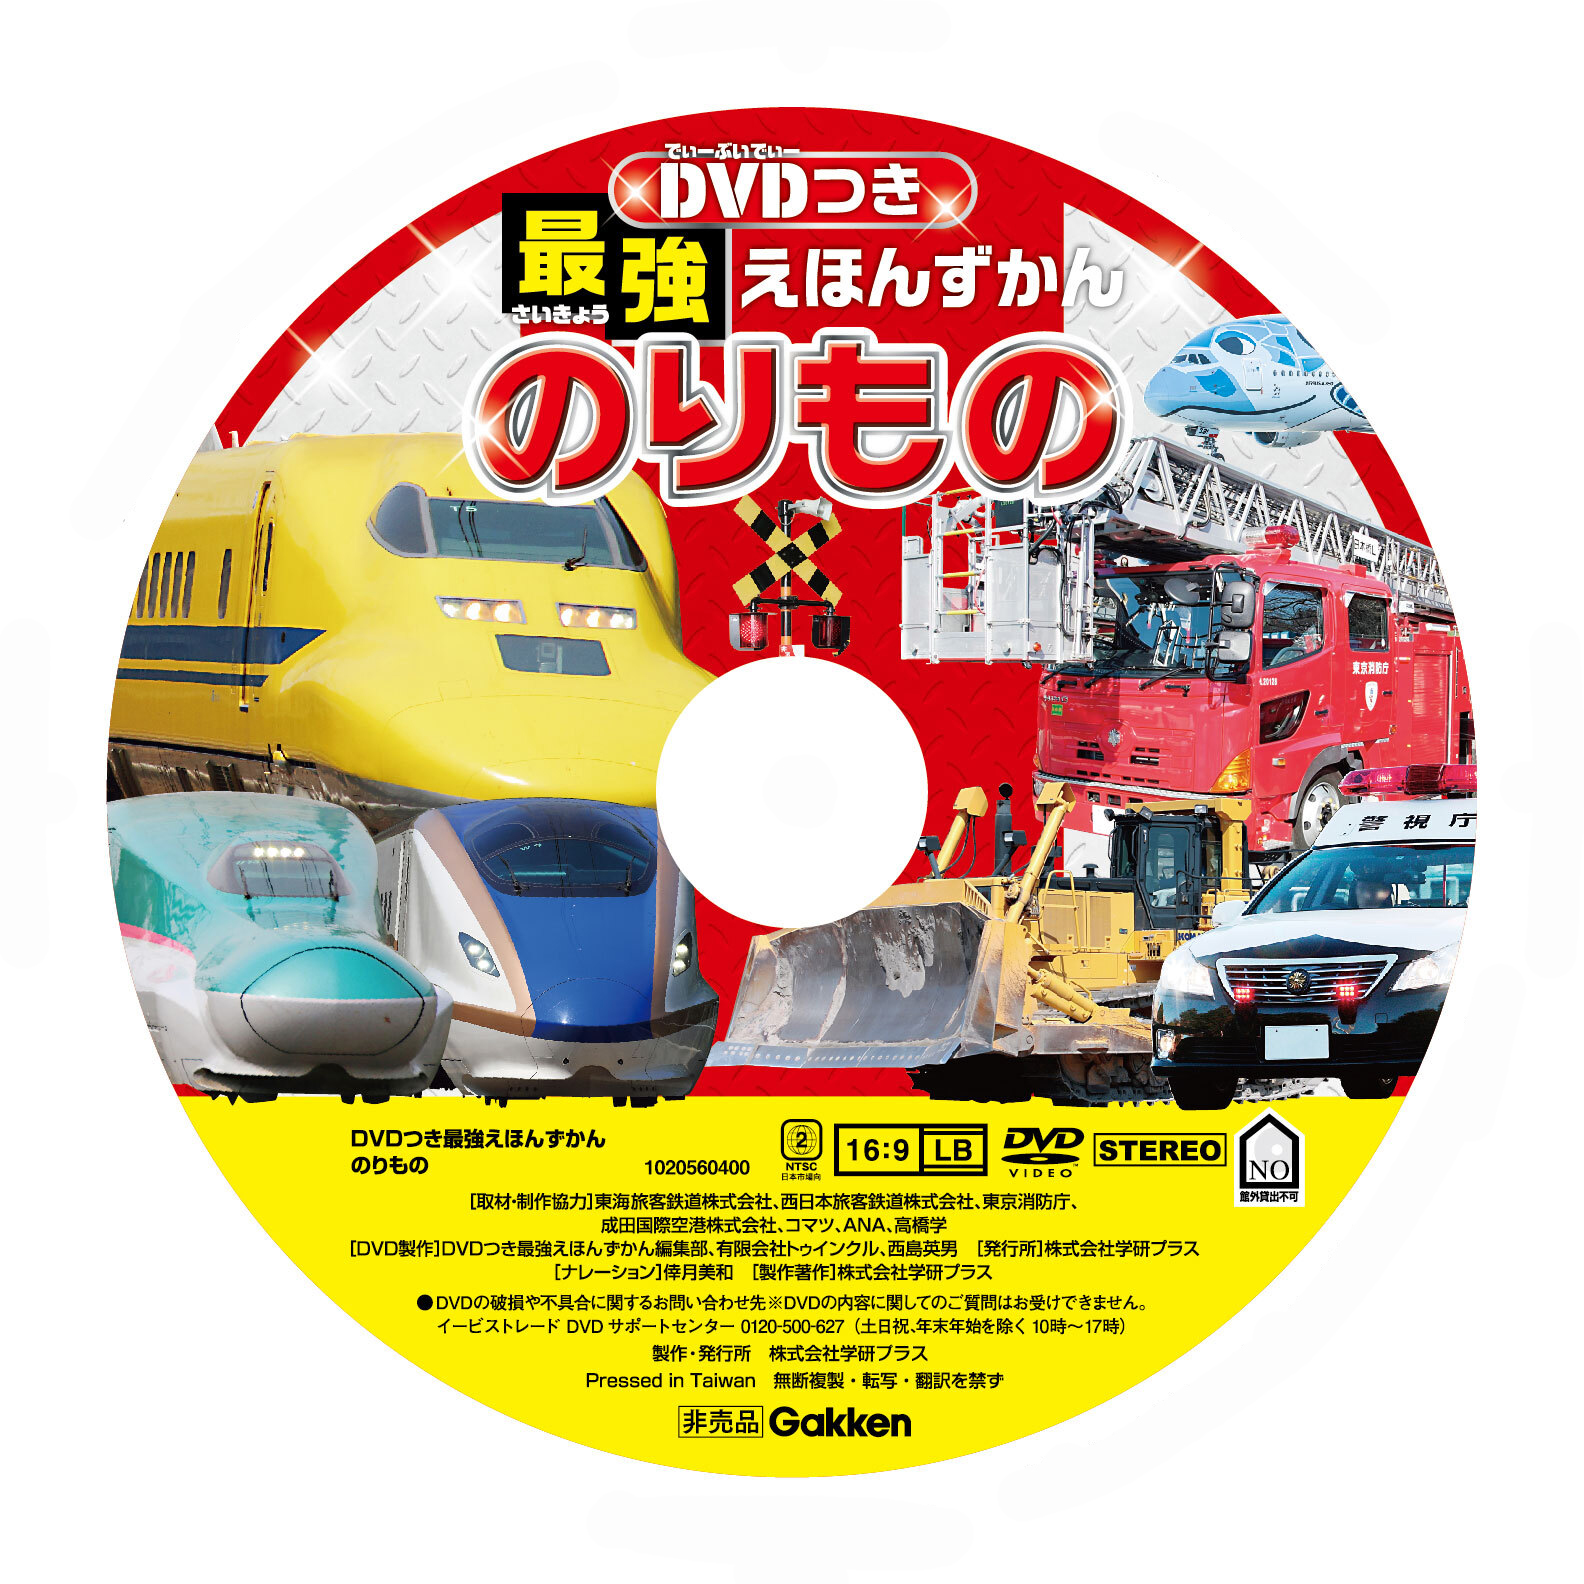 「DVD」盤面画像